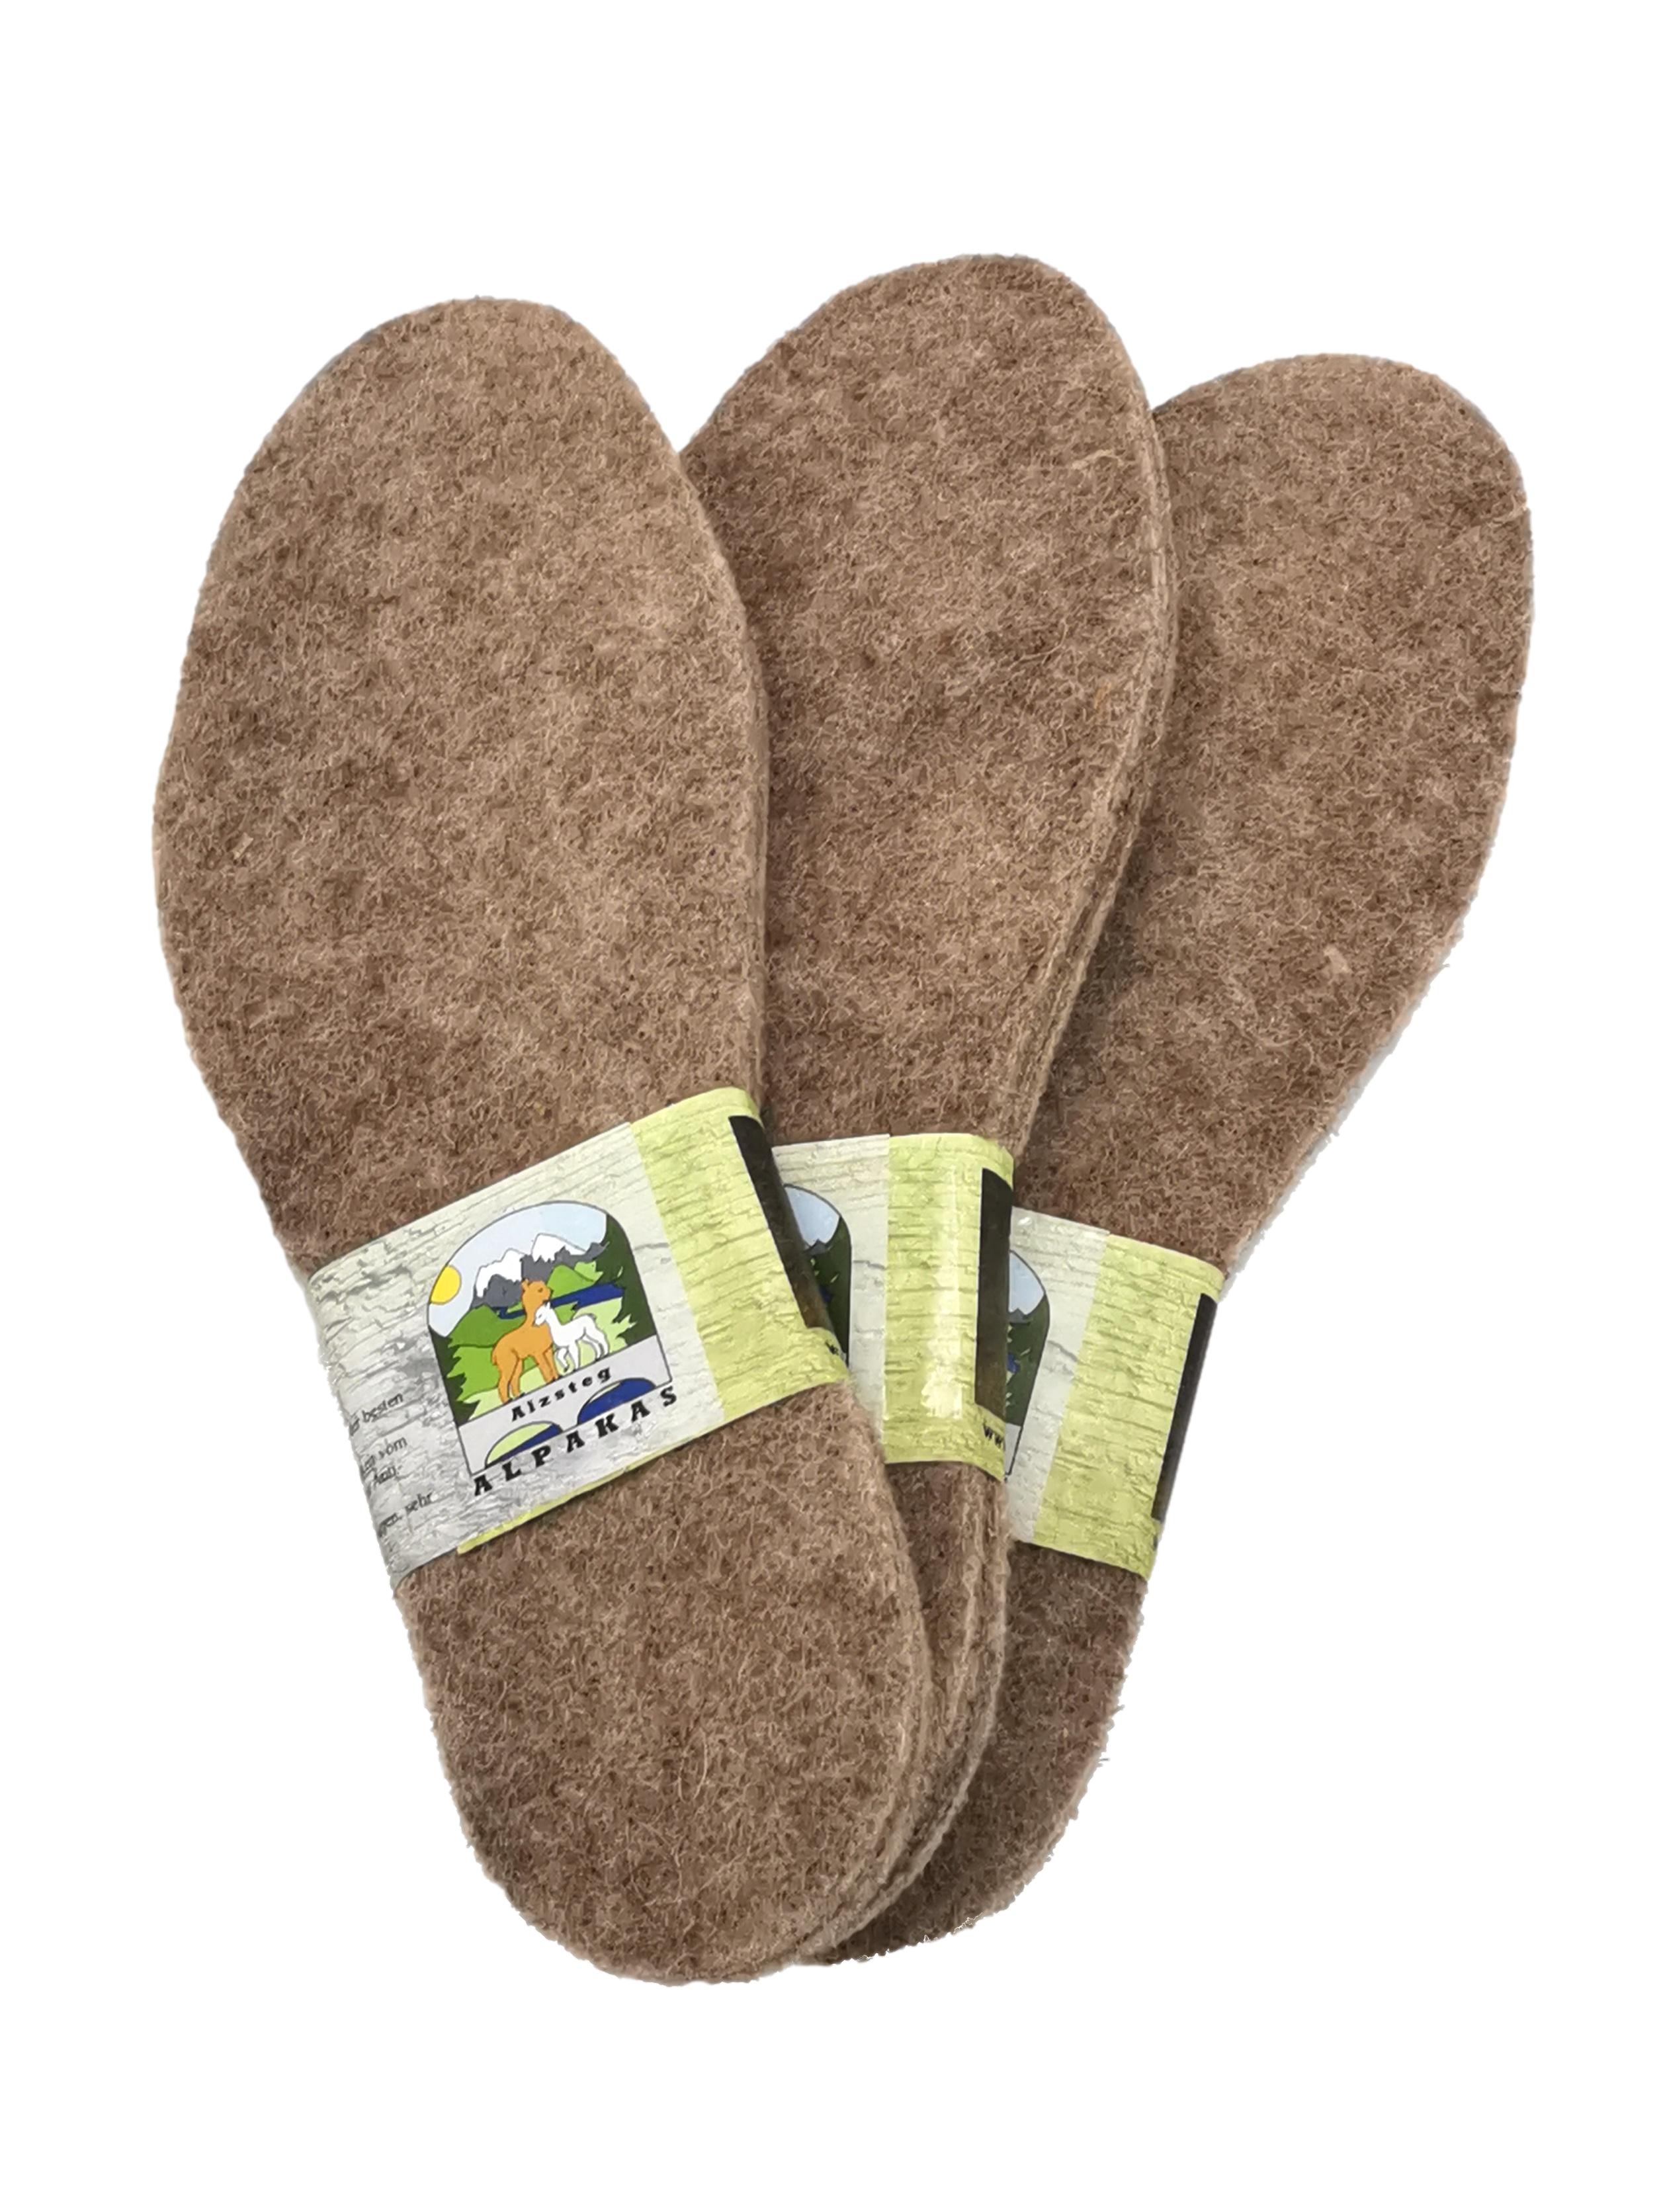 Schuheinlegesohlen wärmende Alpakasohle Extra warm, weich, atmungsaktiv, verschiedene Größen 36-51 | Alpaka Filz Thermoeinlage